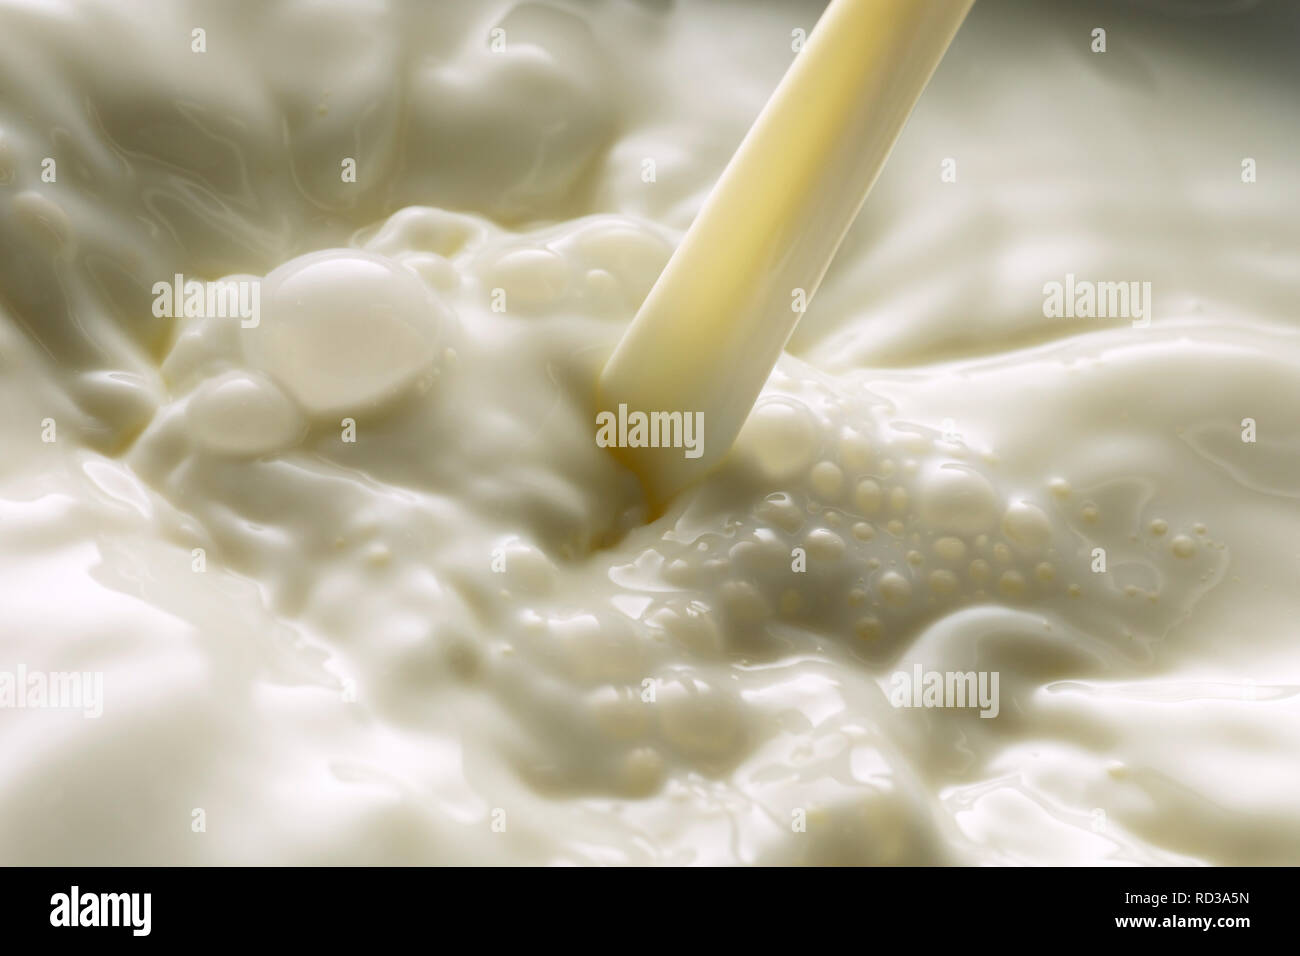 Cerca de verter la leche haciendo burbujas, Foto de estudio Foto de stock